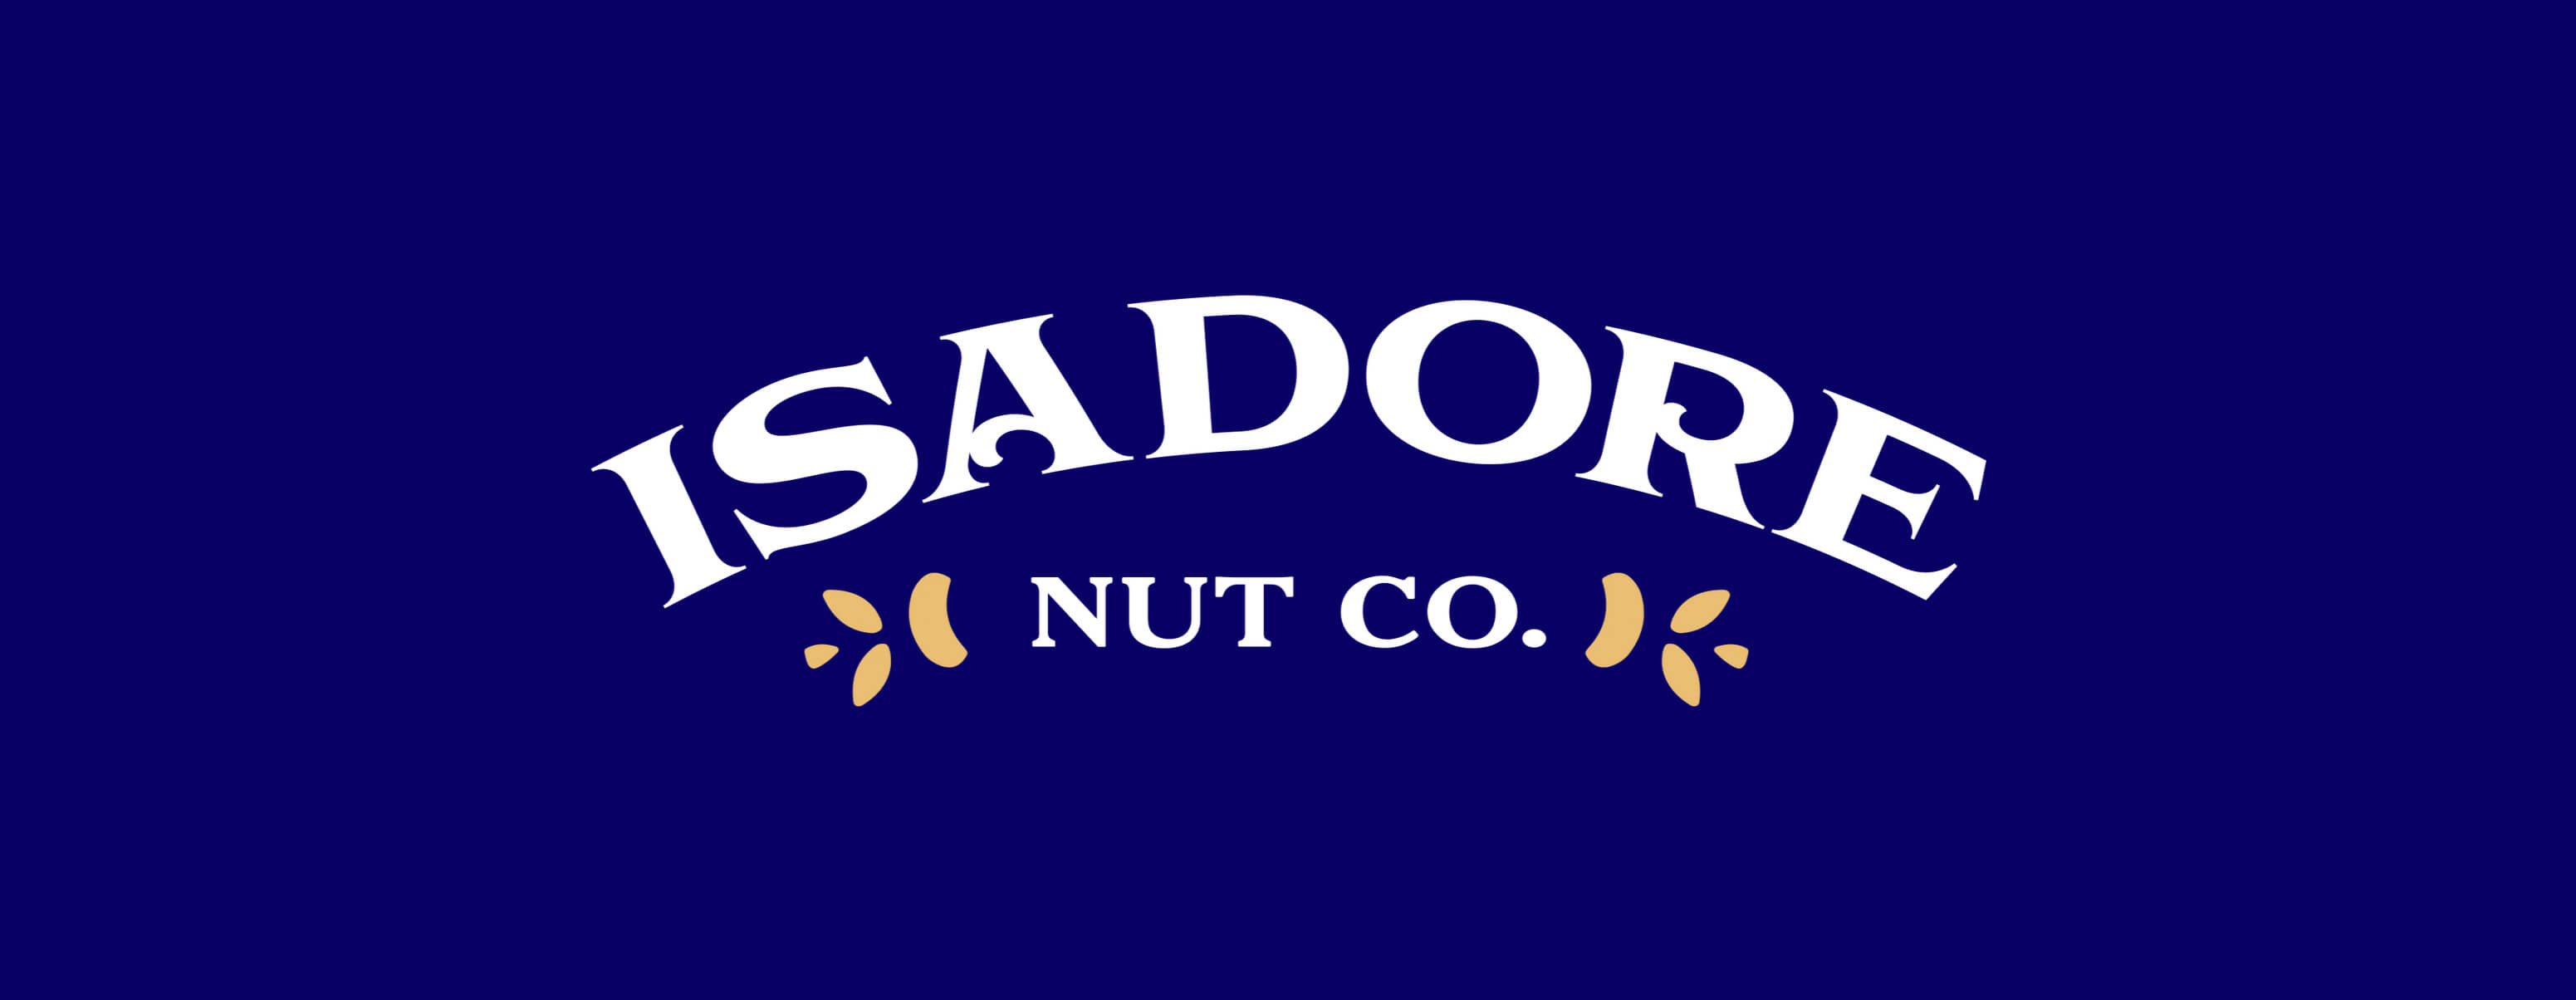 Isadore Nut Company Logo